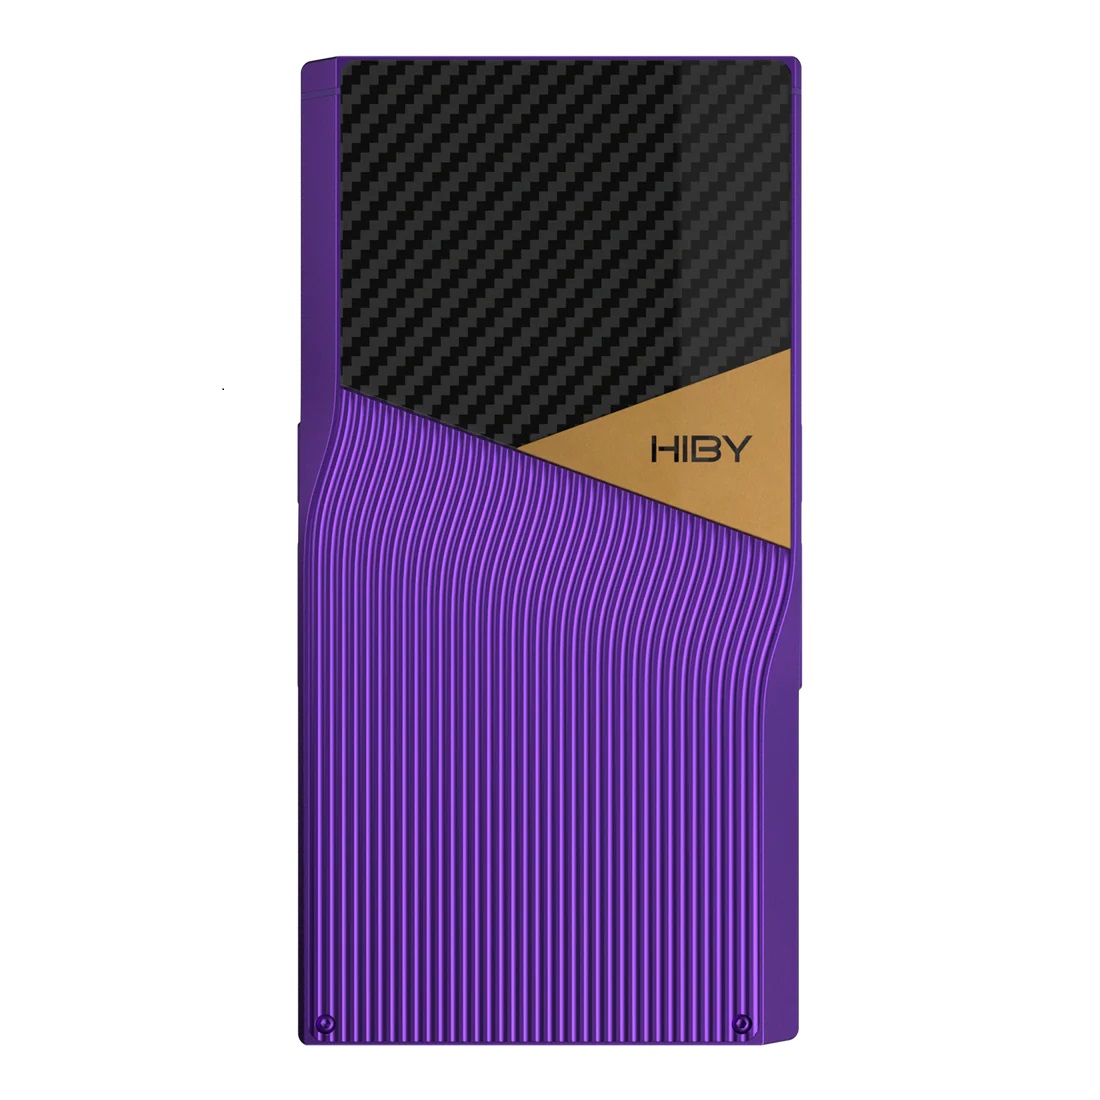 Hiby R6 Pro Gen II SE